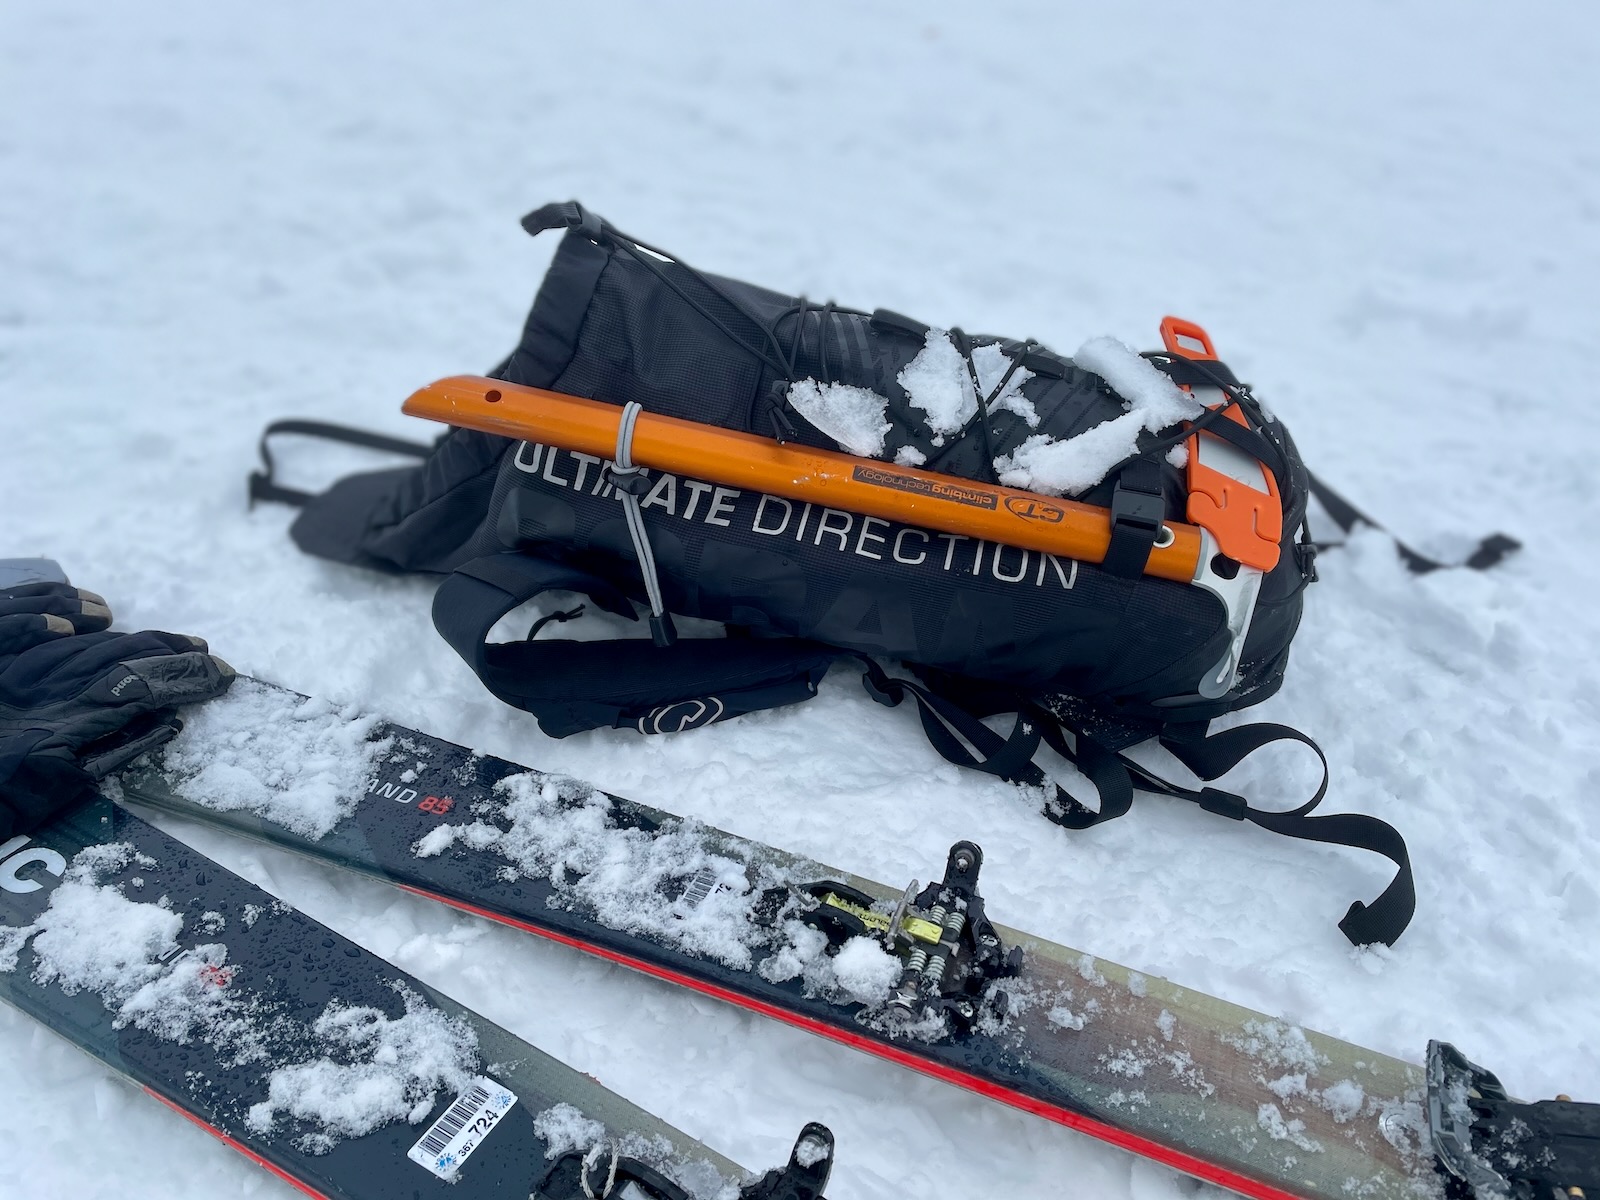 Przegląd lekkich plecaków dla wspinaczki i skitouringu z Decathlonu